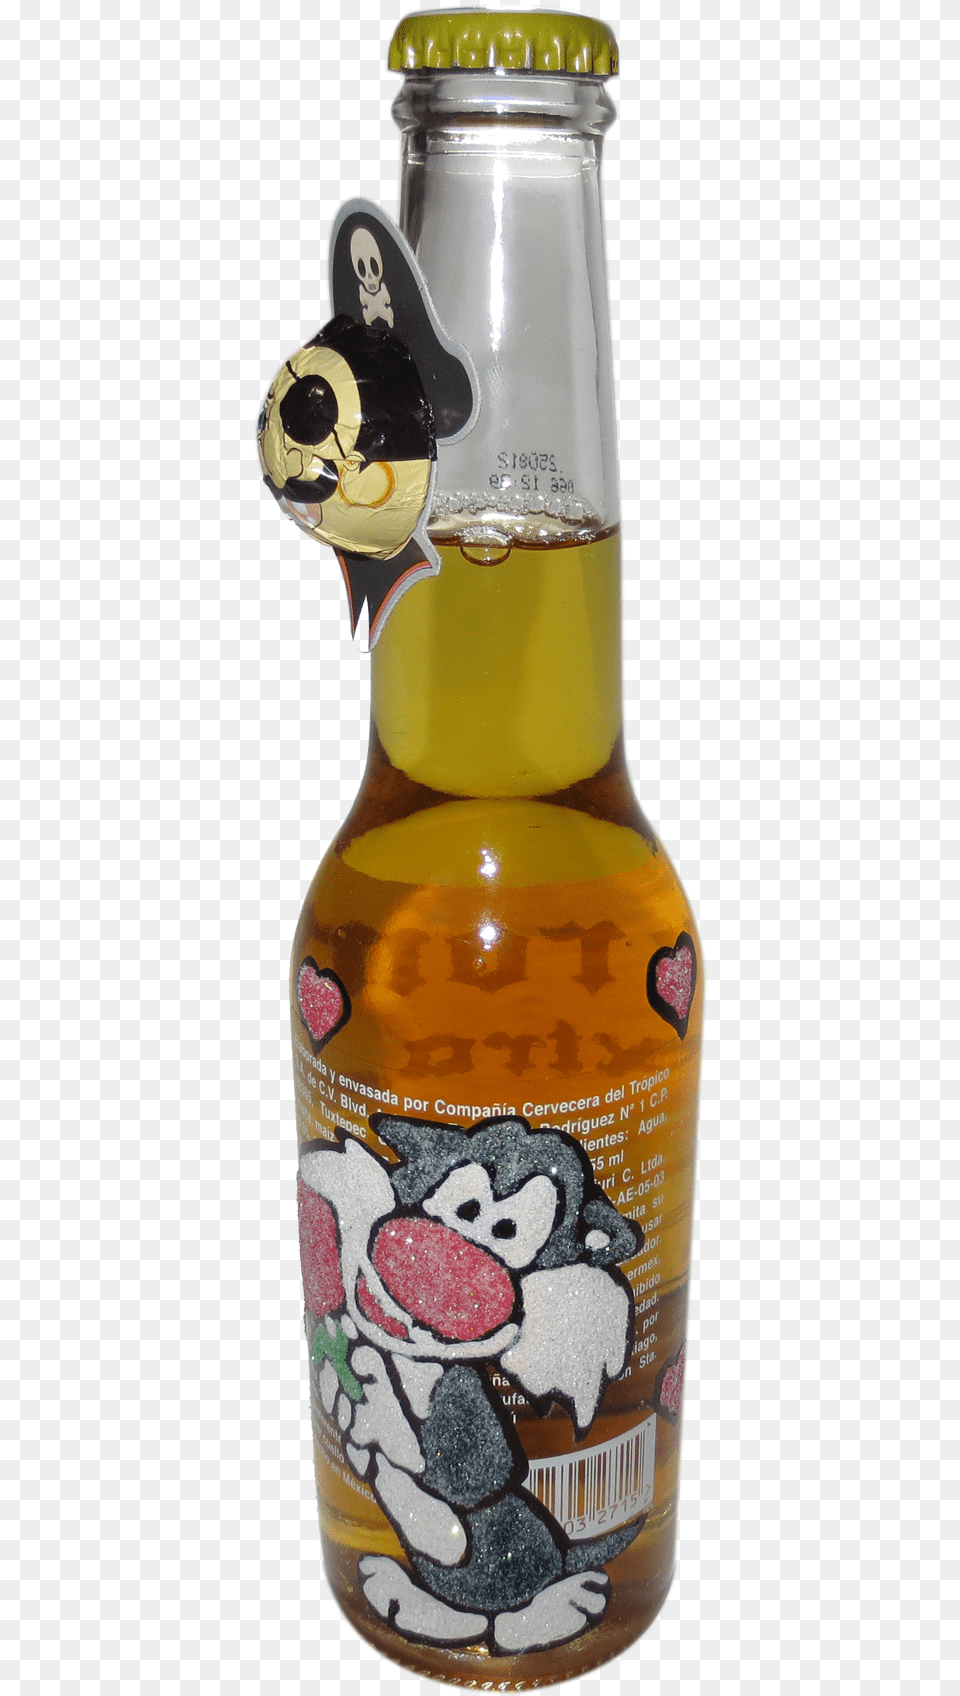 Lager, Alcohol, Beer, Beverage, Beer Bottle Png Image